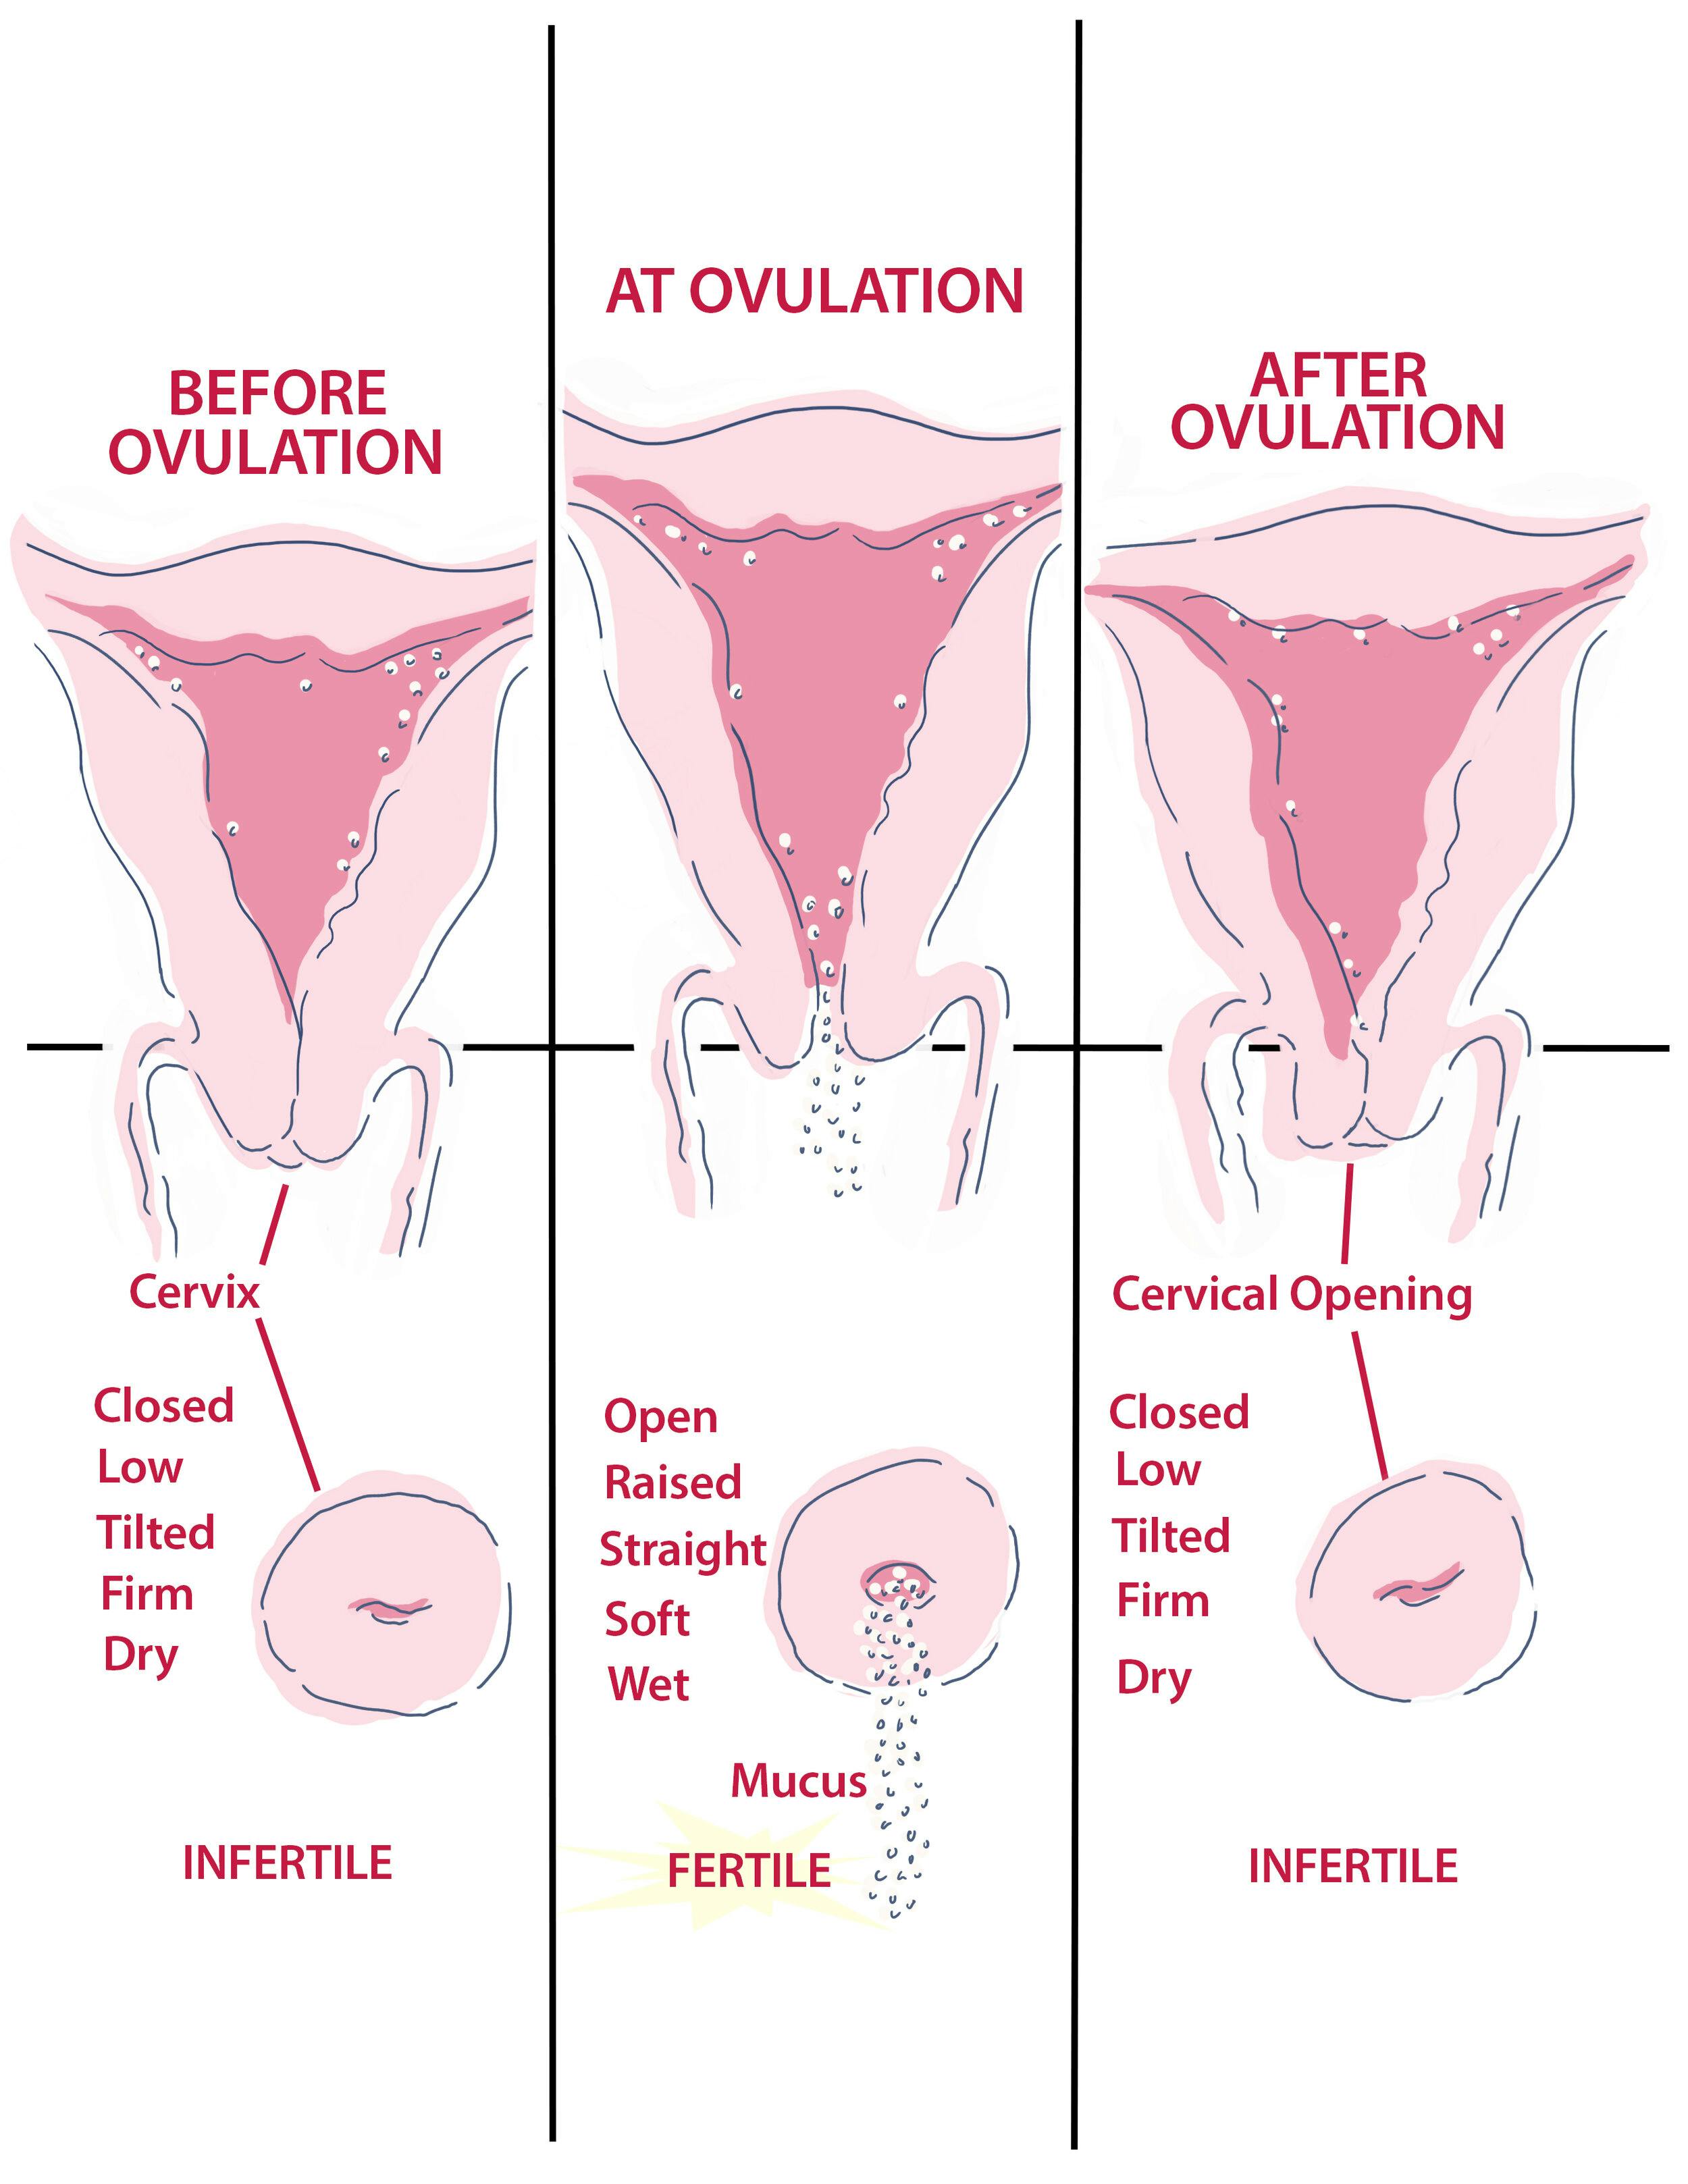 A méhszáj helyzetének változása ovuláció előtt és után